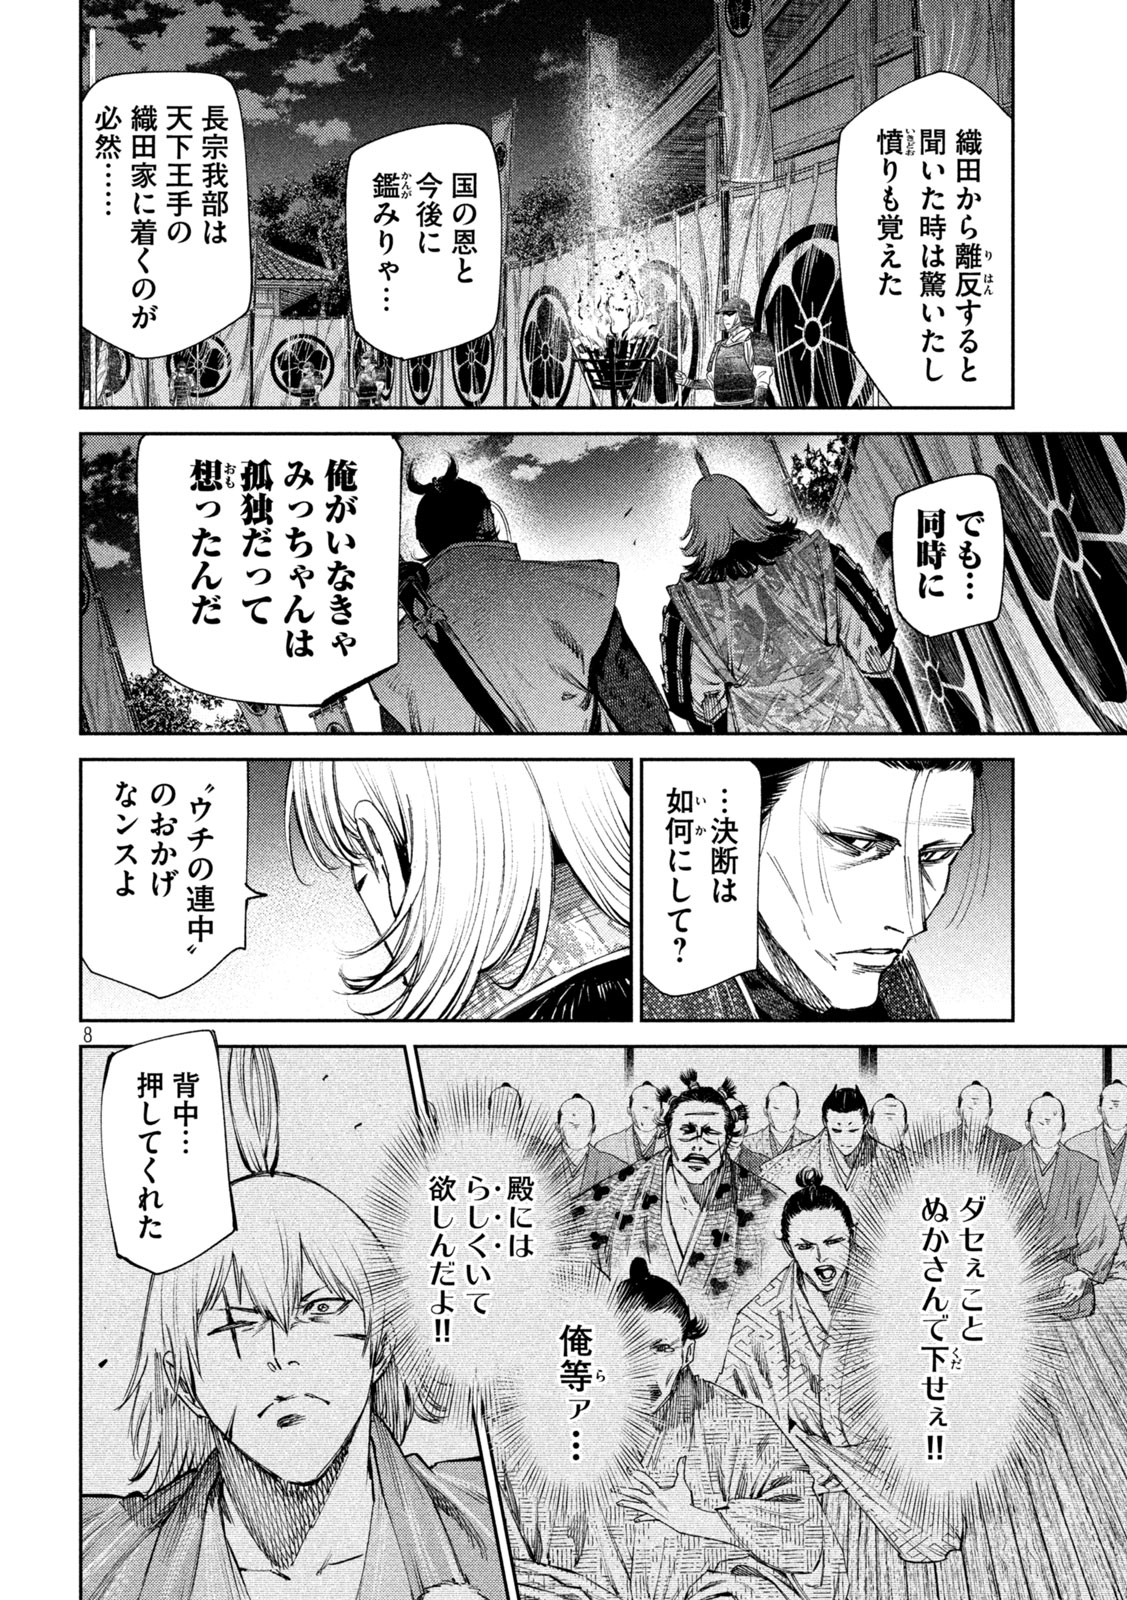 Nando toki o kurikaeshitemo Honnouji ga moerunjaga! - Chapter 115 - Page 8